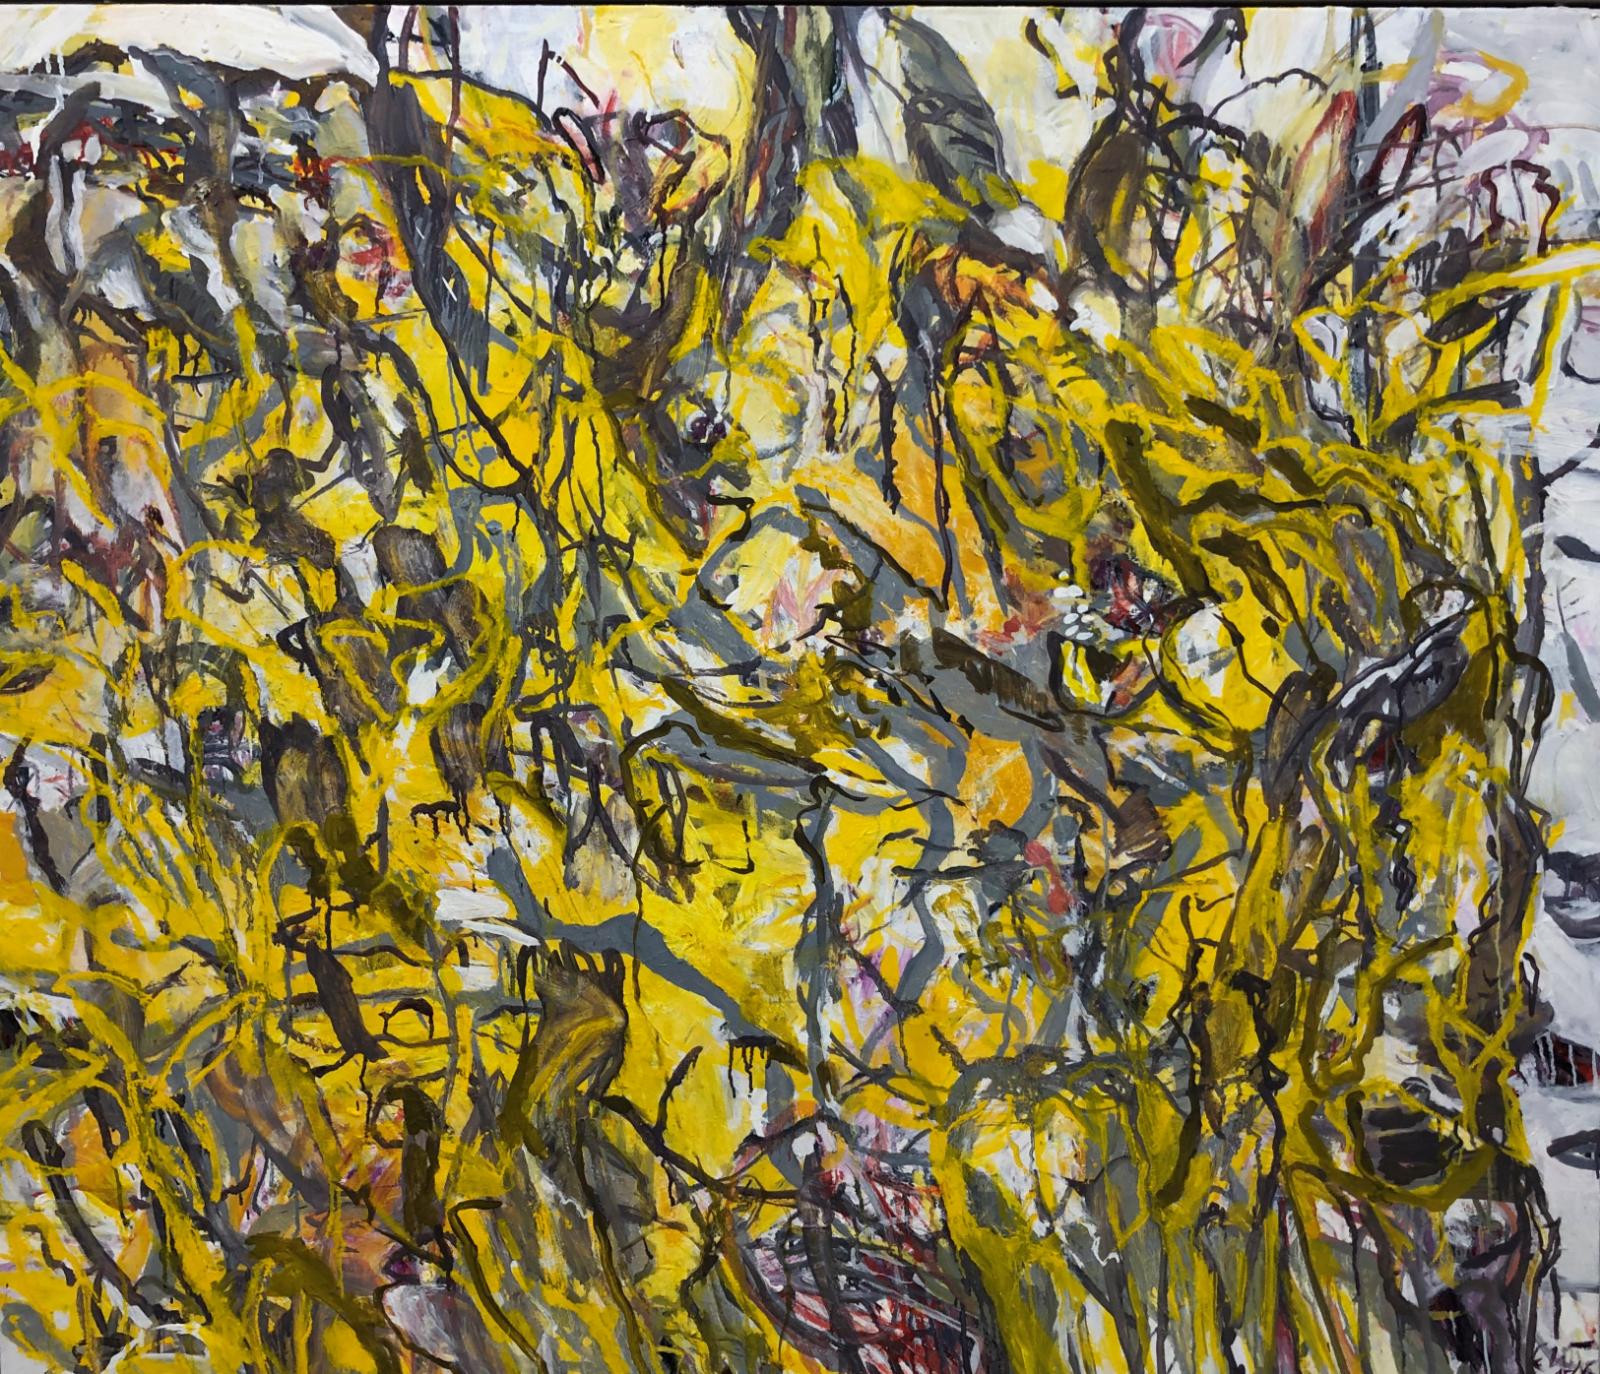 Elke Wree, Sonnengeflecht, 2015-2016, Öl auf Leinwand, 130 cm x 150 cm, Preis auf Anfrage, Galerie Cyprian Brenner